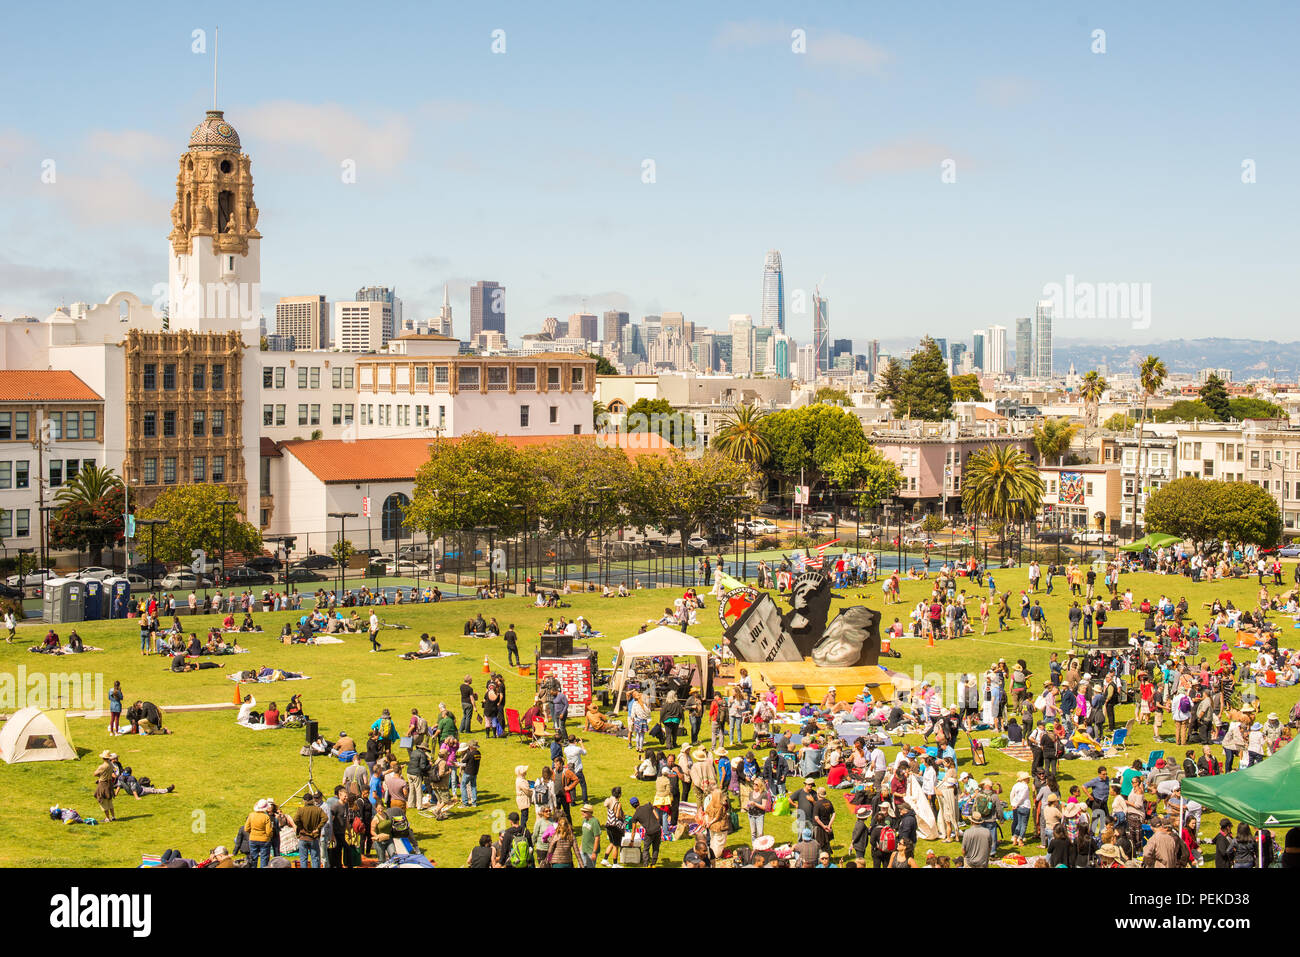 SAN FRANCISCO, CA - JUILLET, 04, 2017 : Mission Dolores Park panorama de San Francisco. SF est la plus densément peuplée de grandes ville de Californie. Banque D'Images